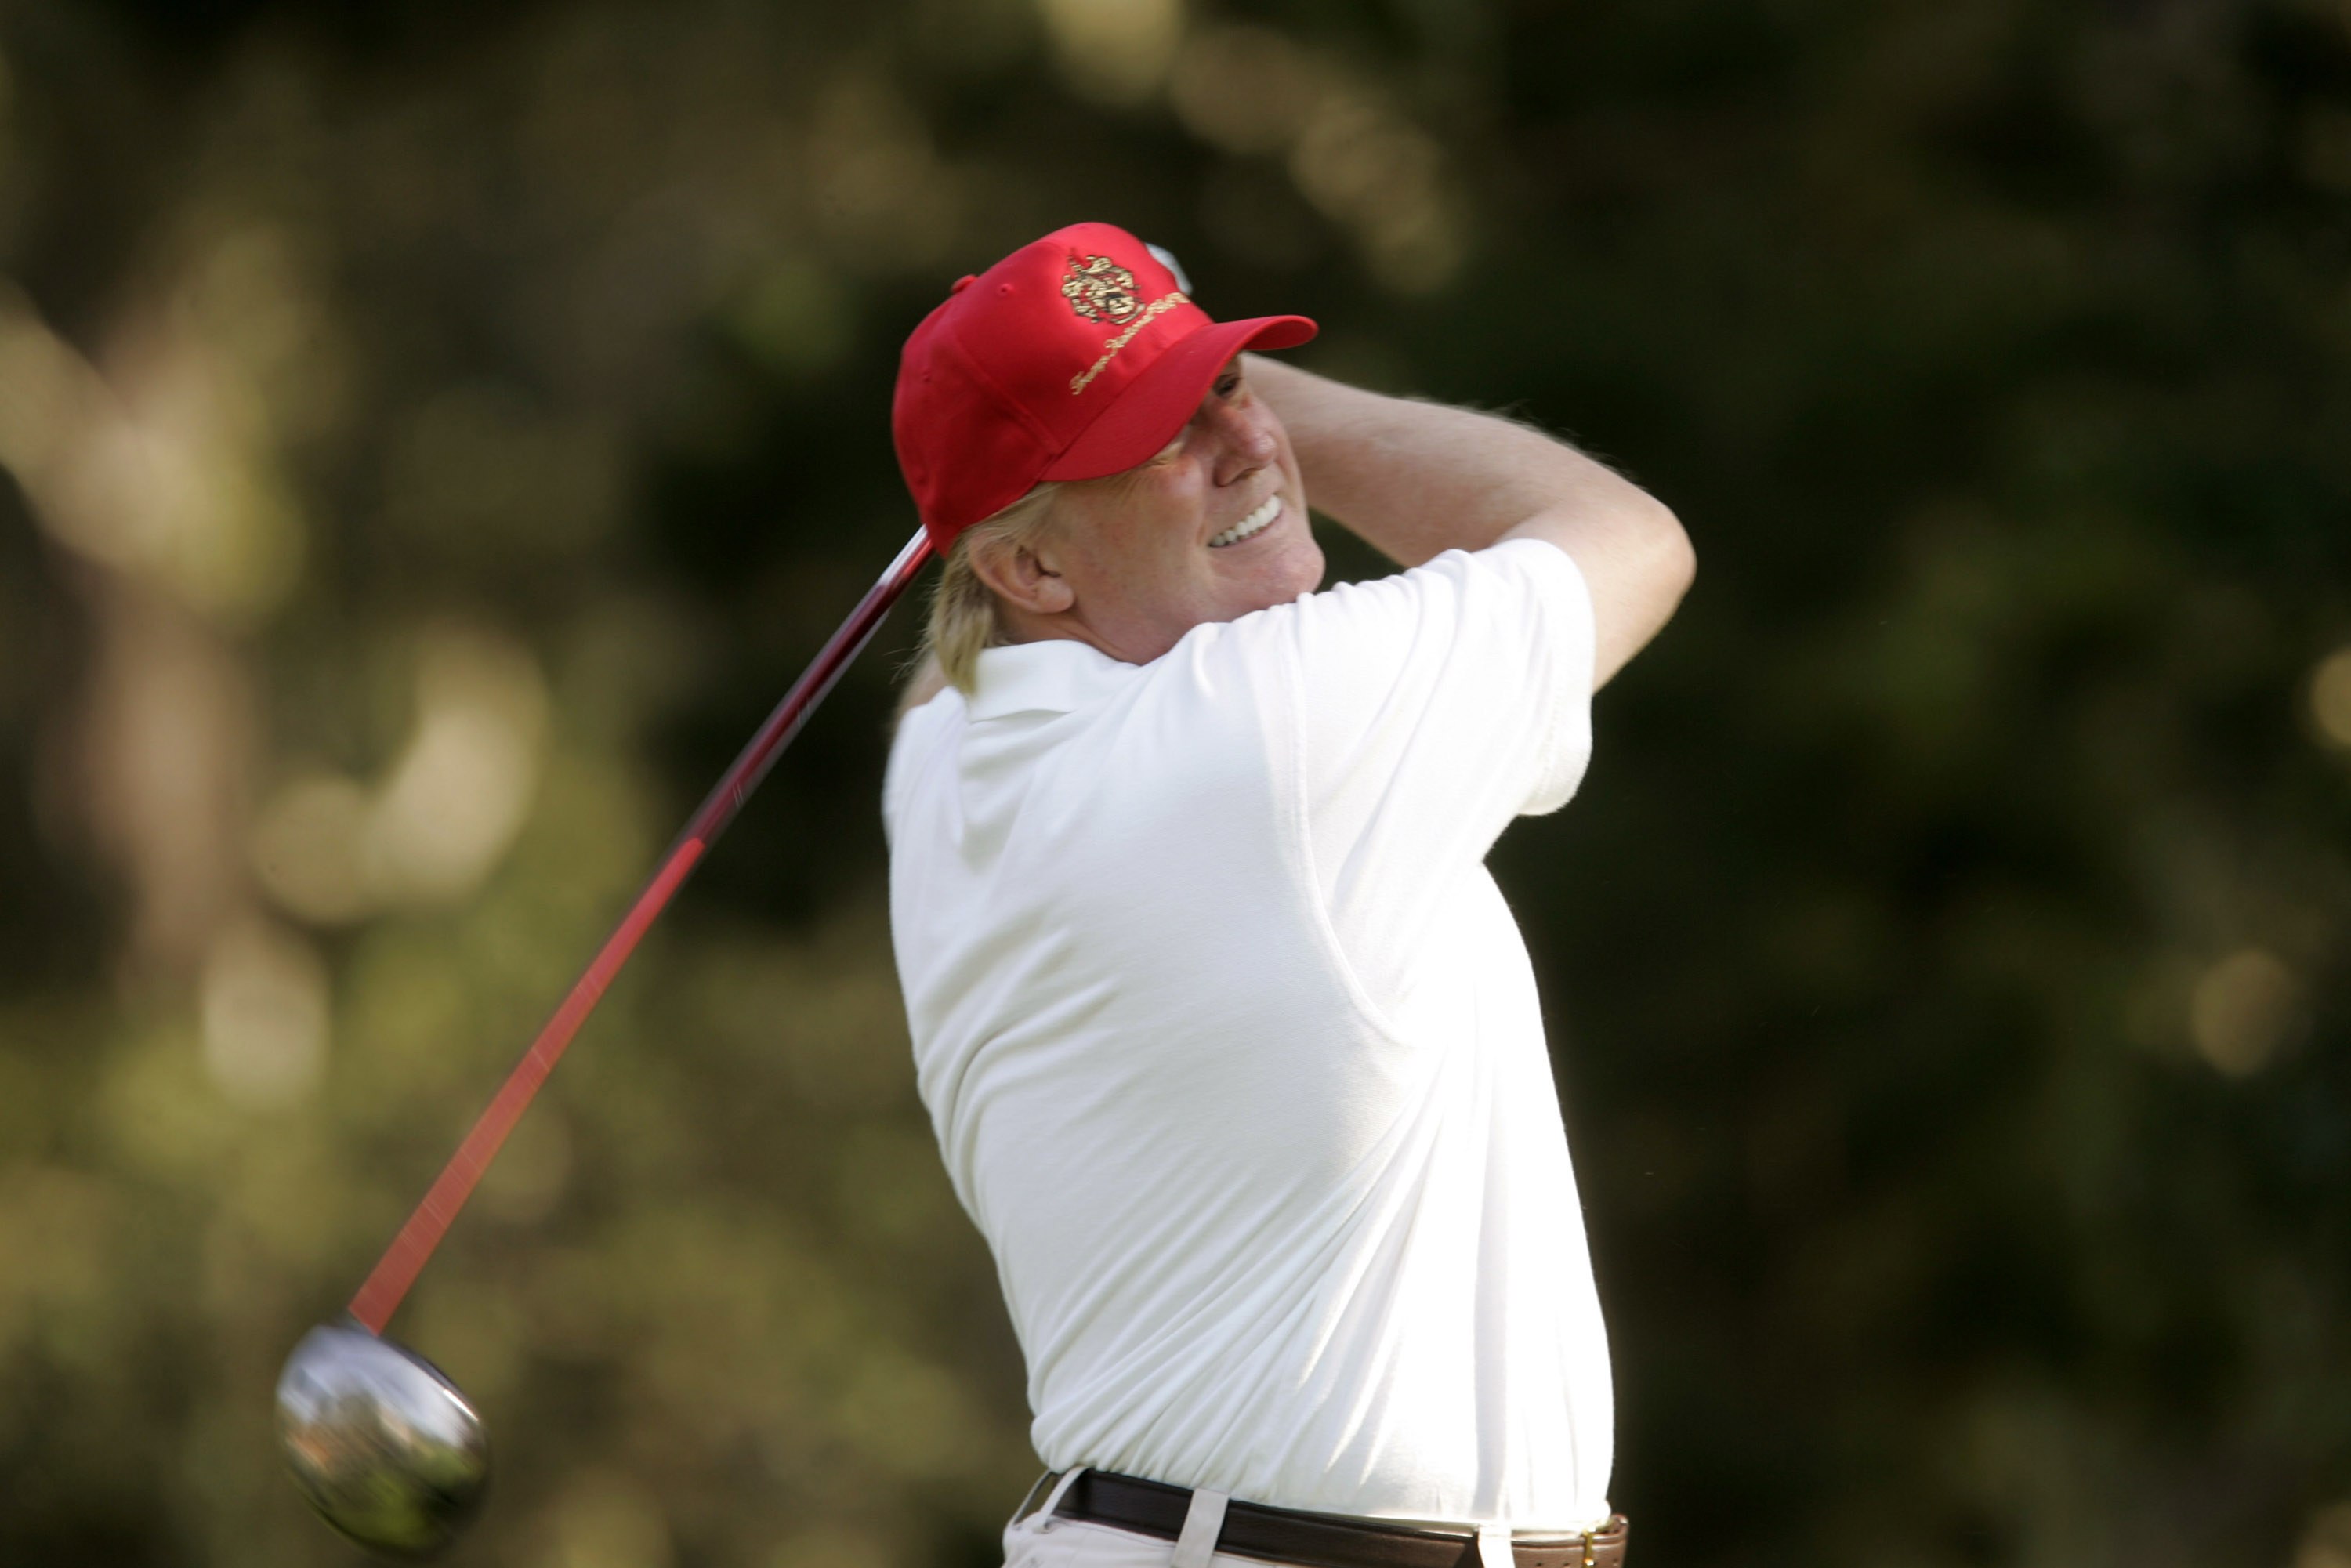 La somme folle dépensée par Donald Trump pour jouer au golf